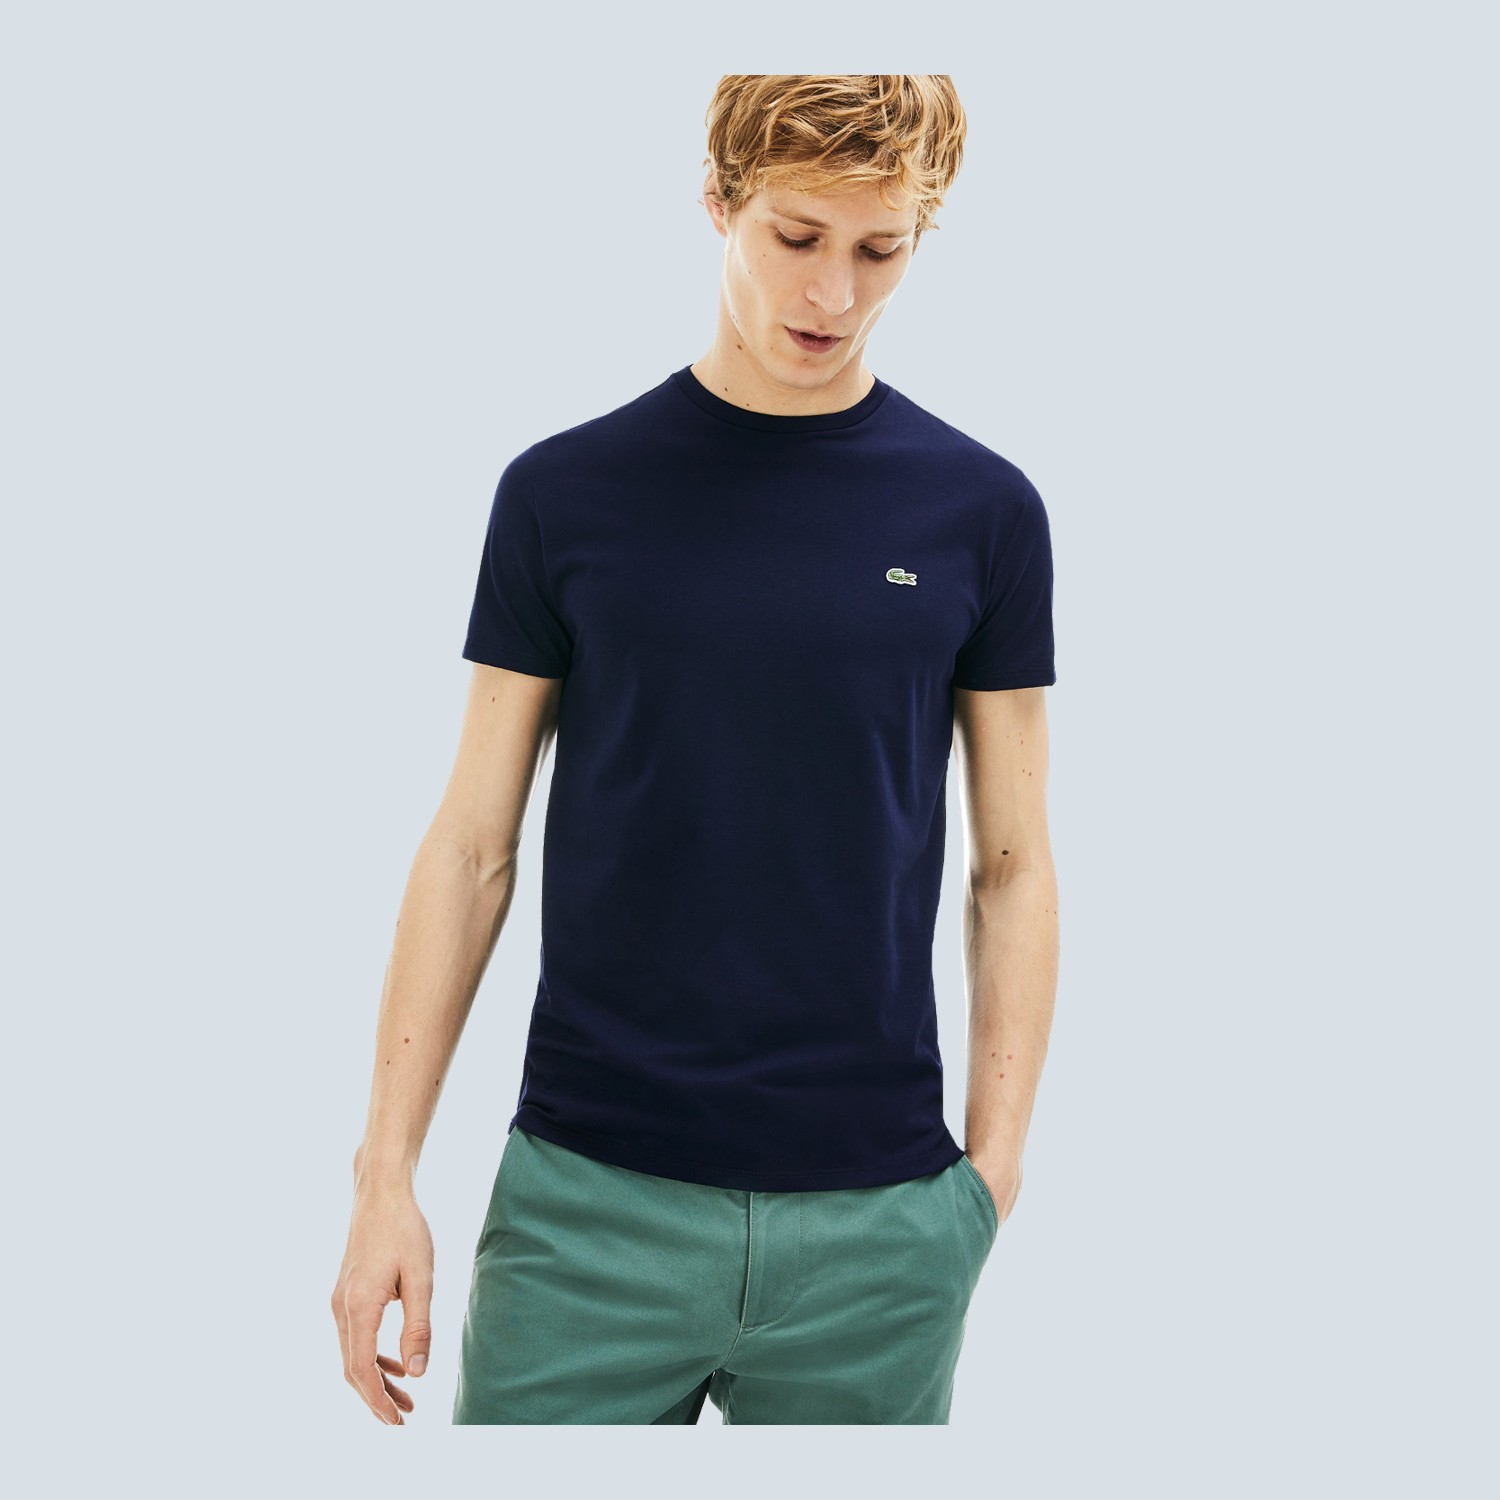 Clothing Lacoste Mens T-shirt - T-shirt - 1500x1500 Wallpaper - teahub.io